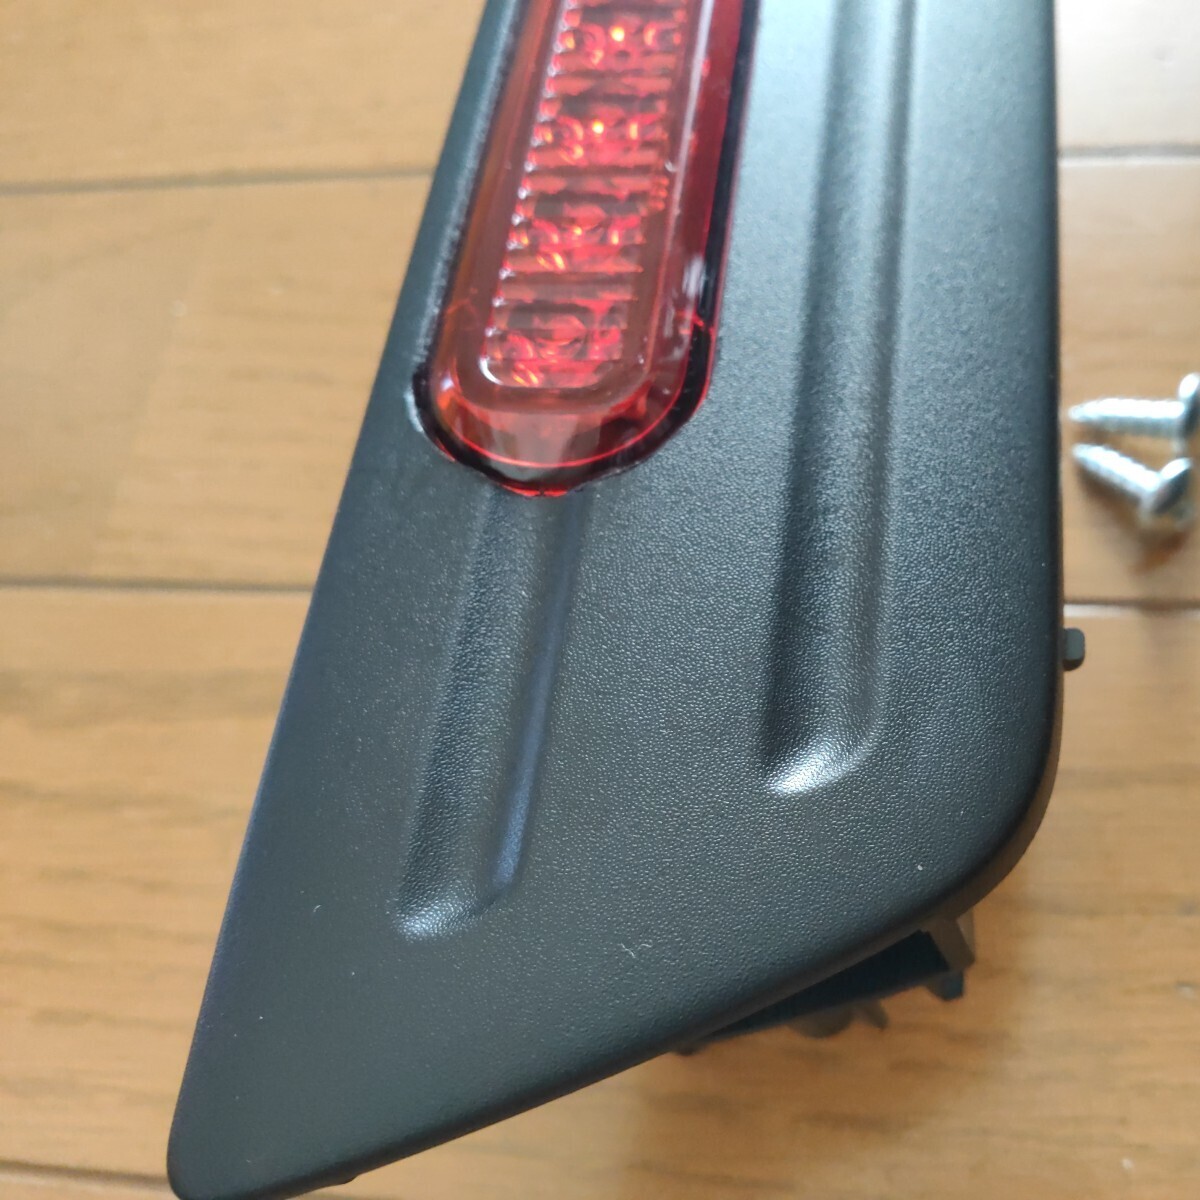  Suzuki Swift Sports ZC33S rear foglamp back foglamp 